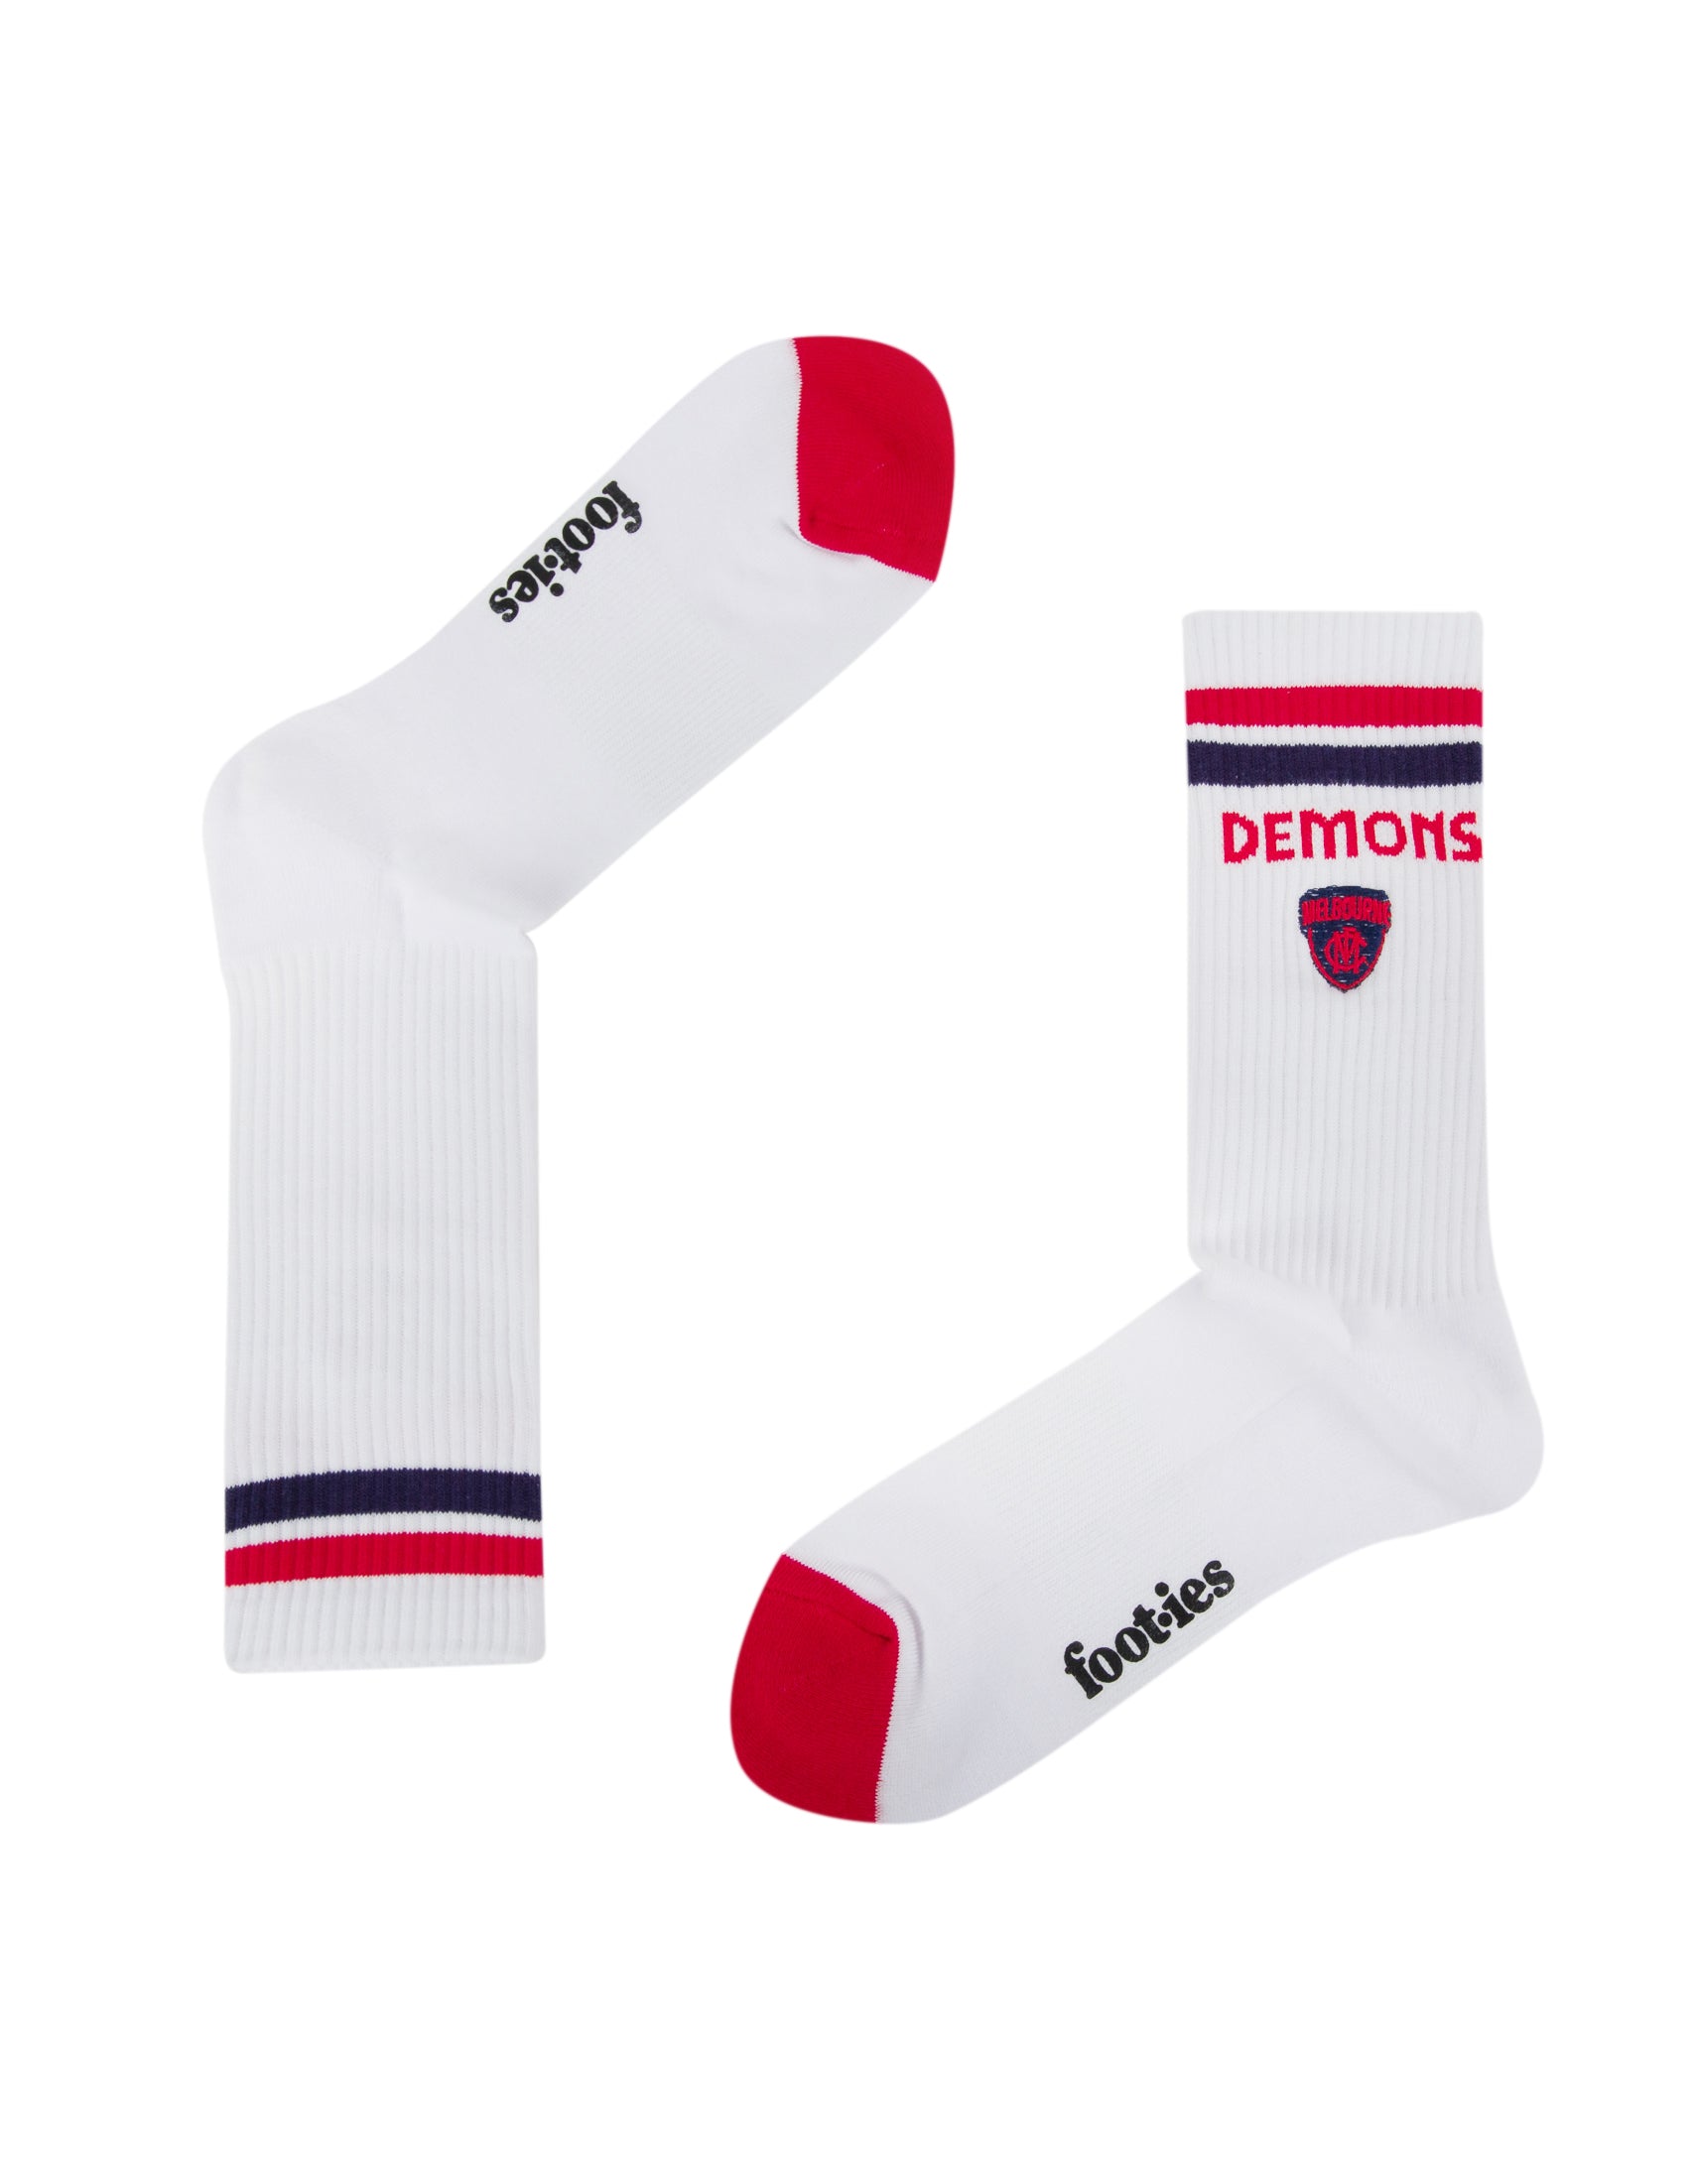 Melbourne Demons Mascot Sneaker Socks 2 Pack